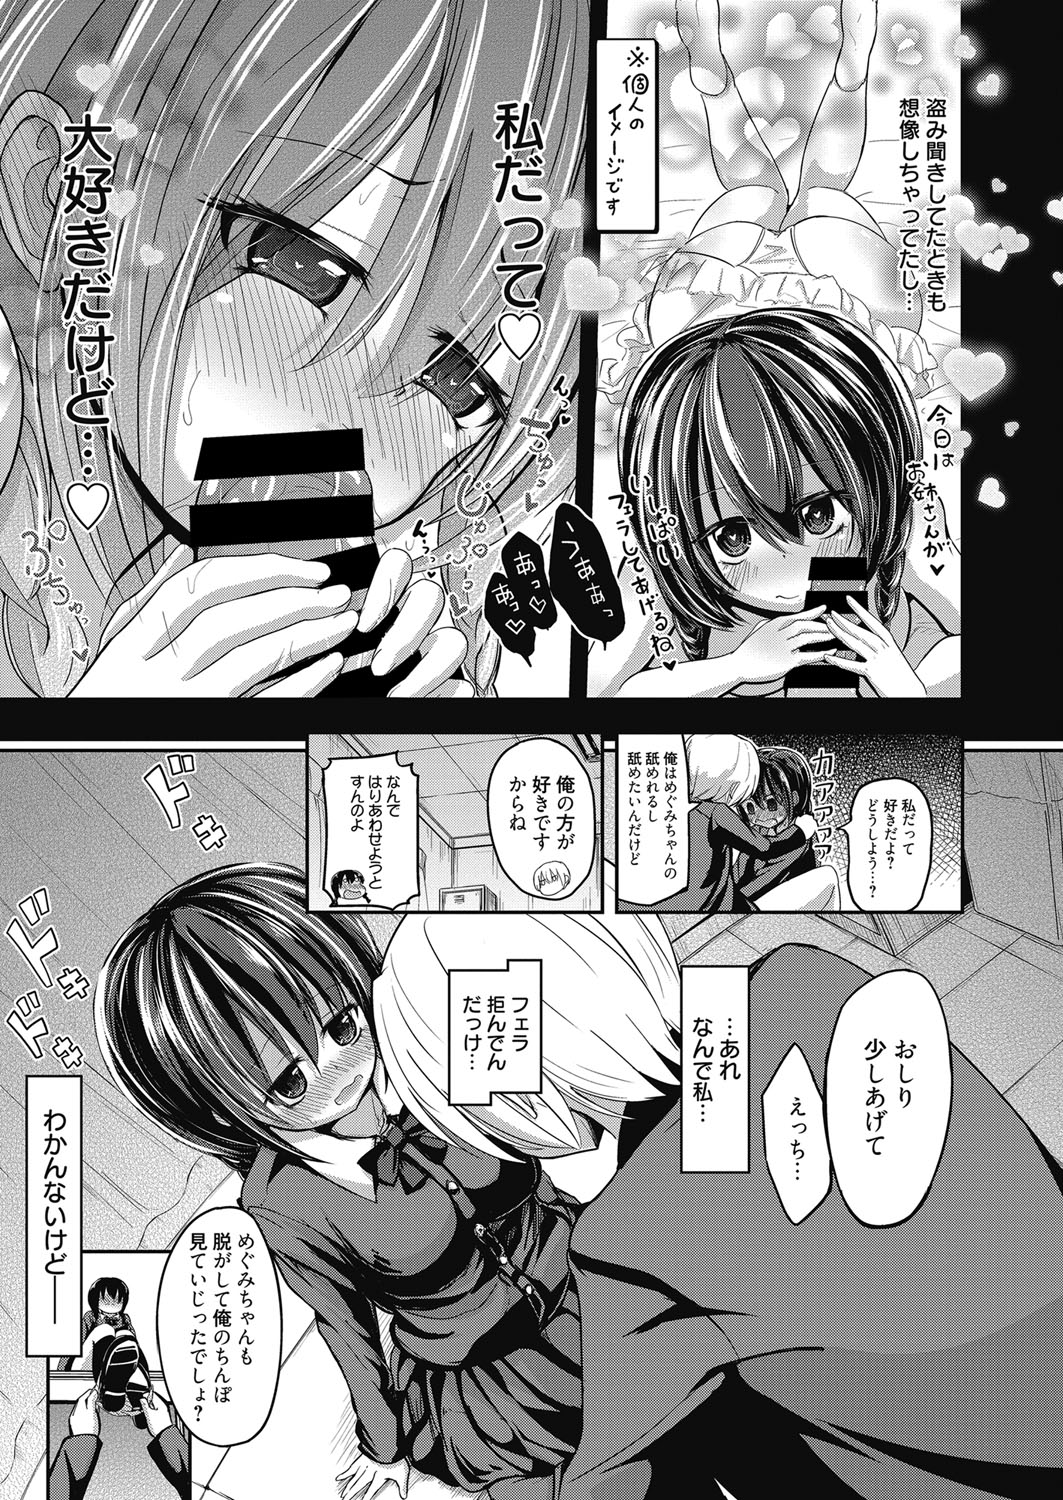 Web Manga Bangaichi Vol. 9 web 漫画ばんがいち Vol.9